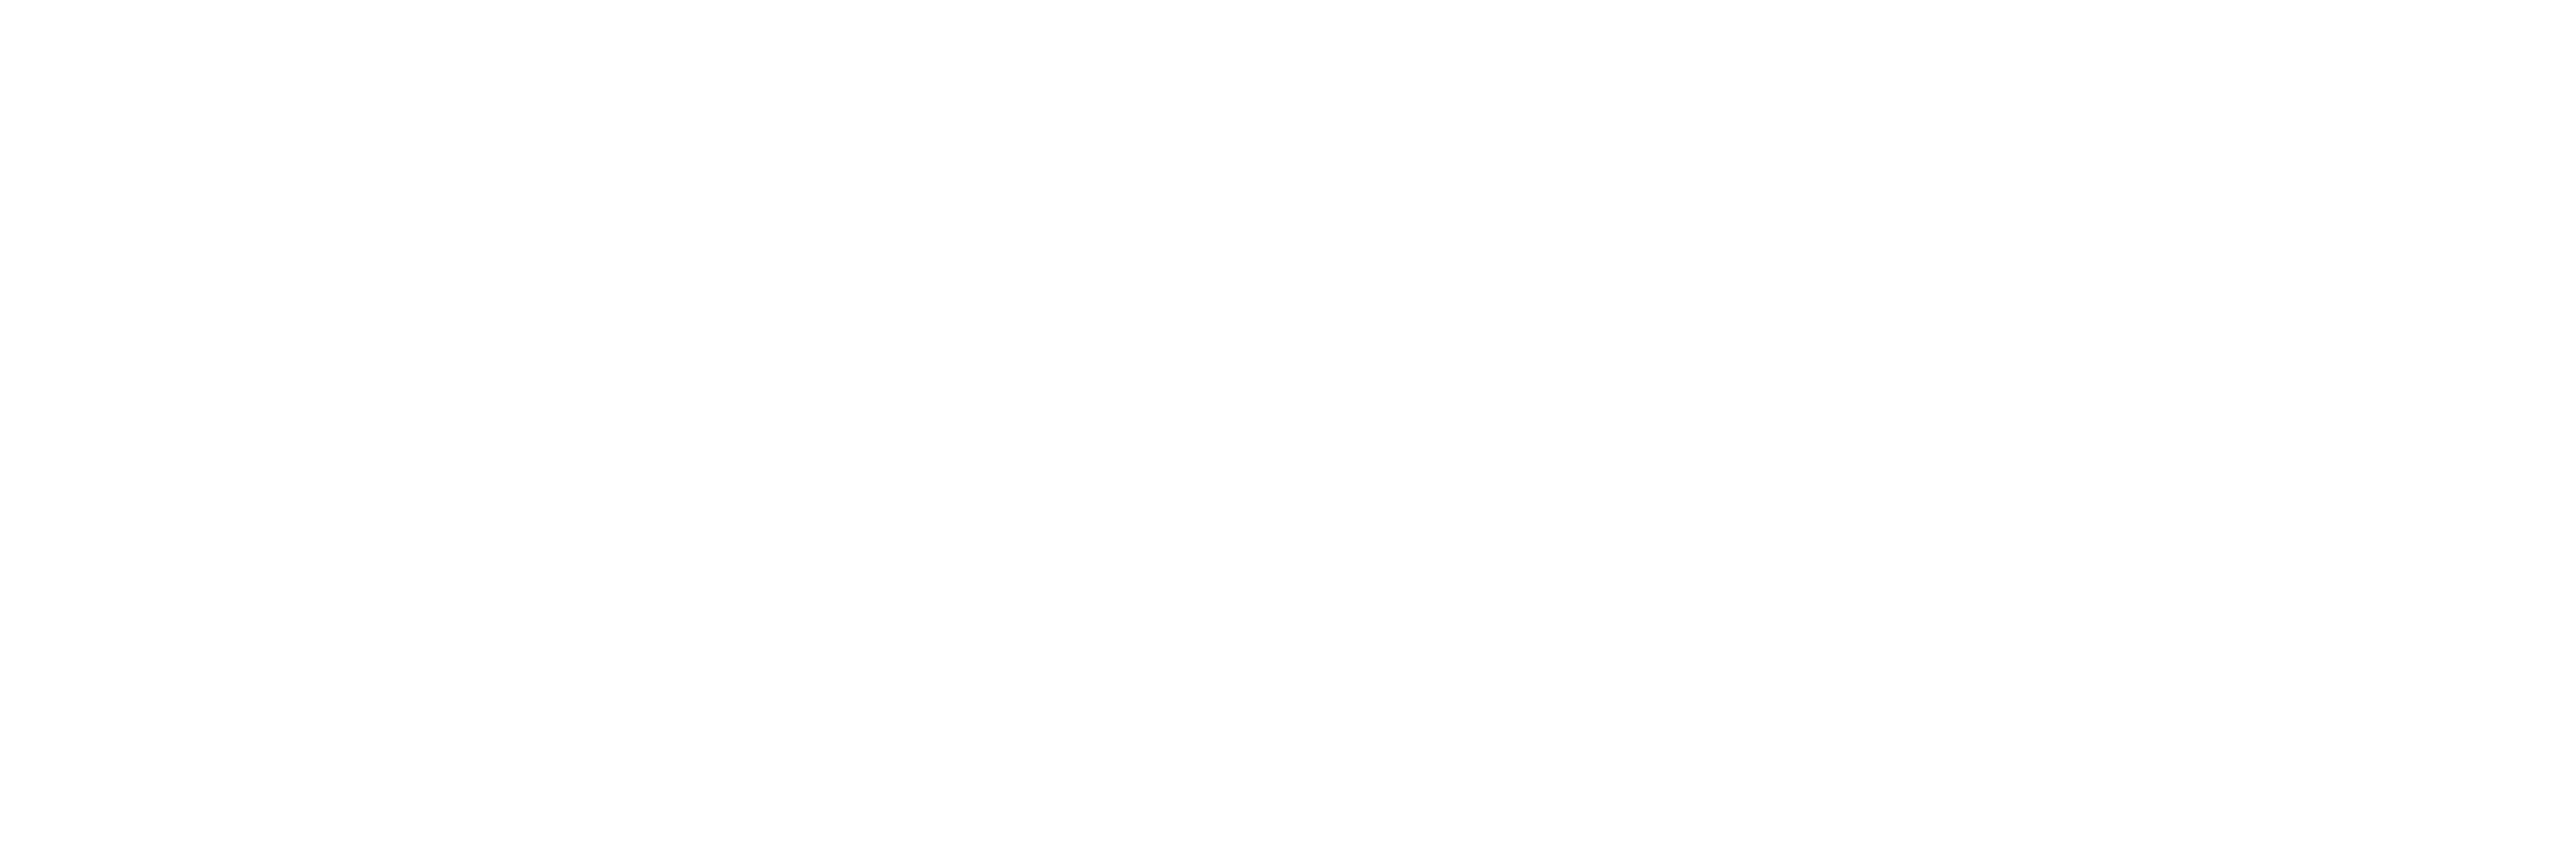 maryhill winery logo